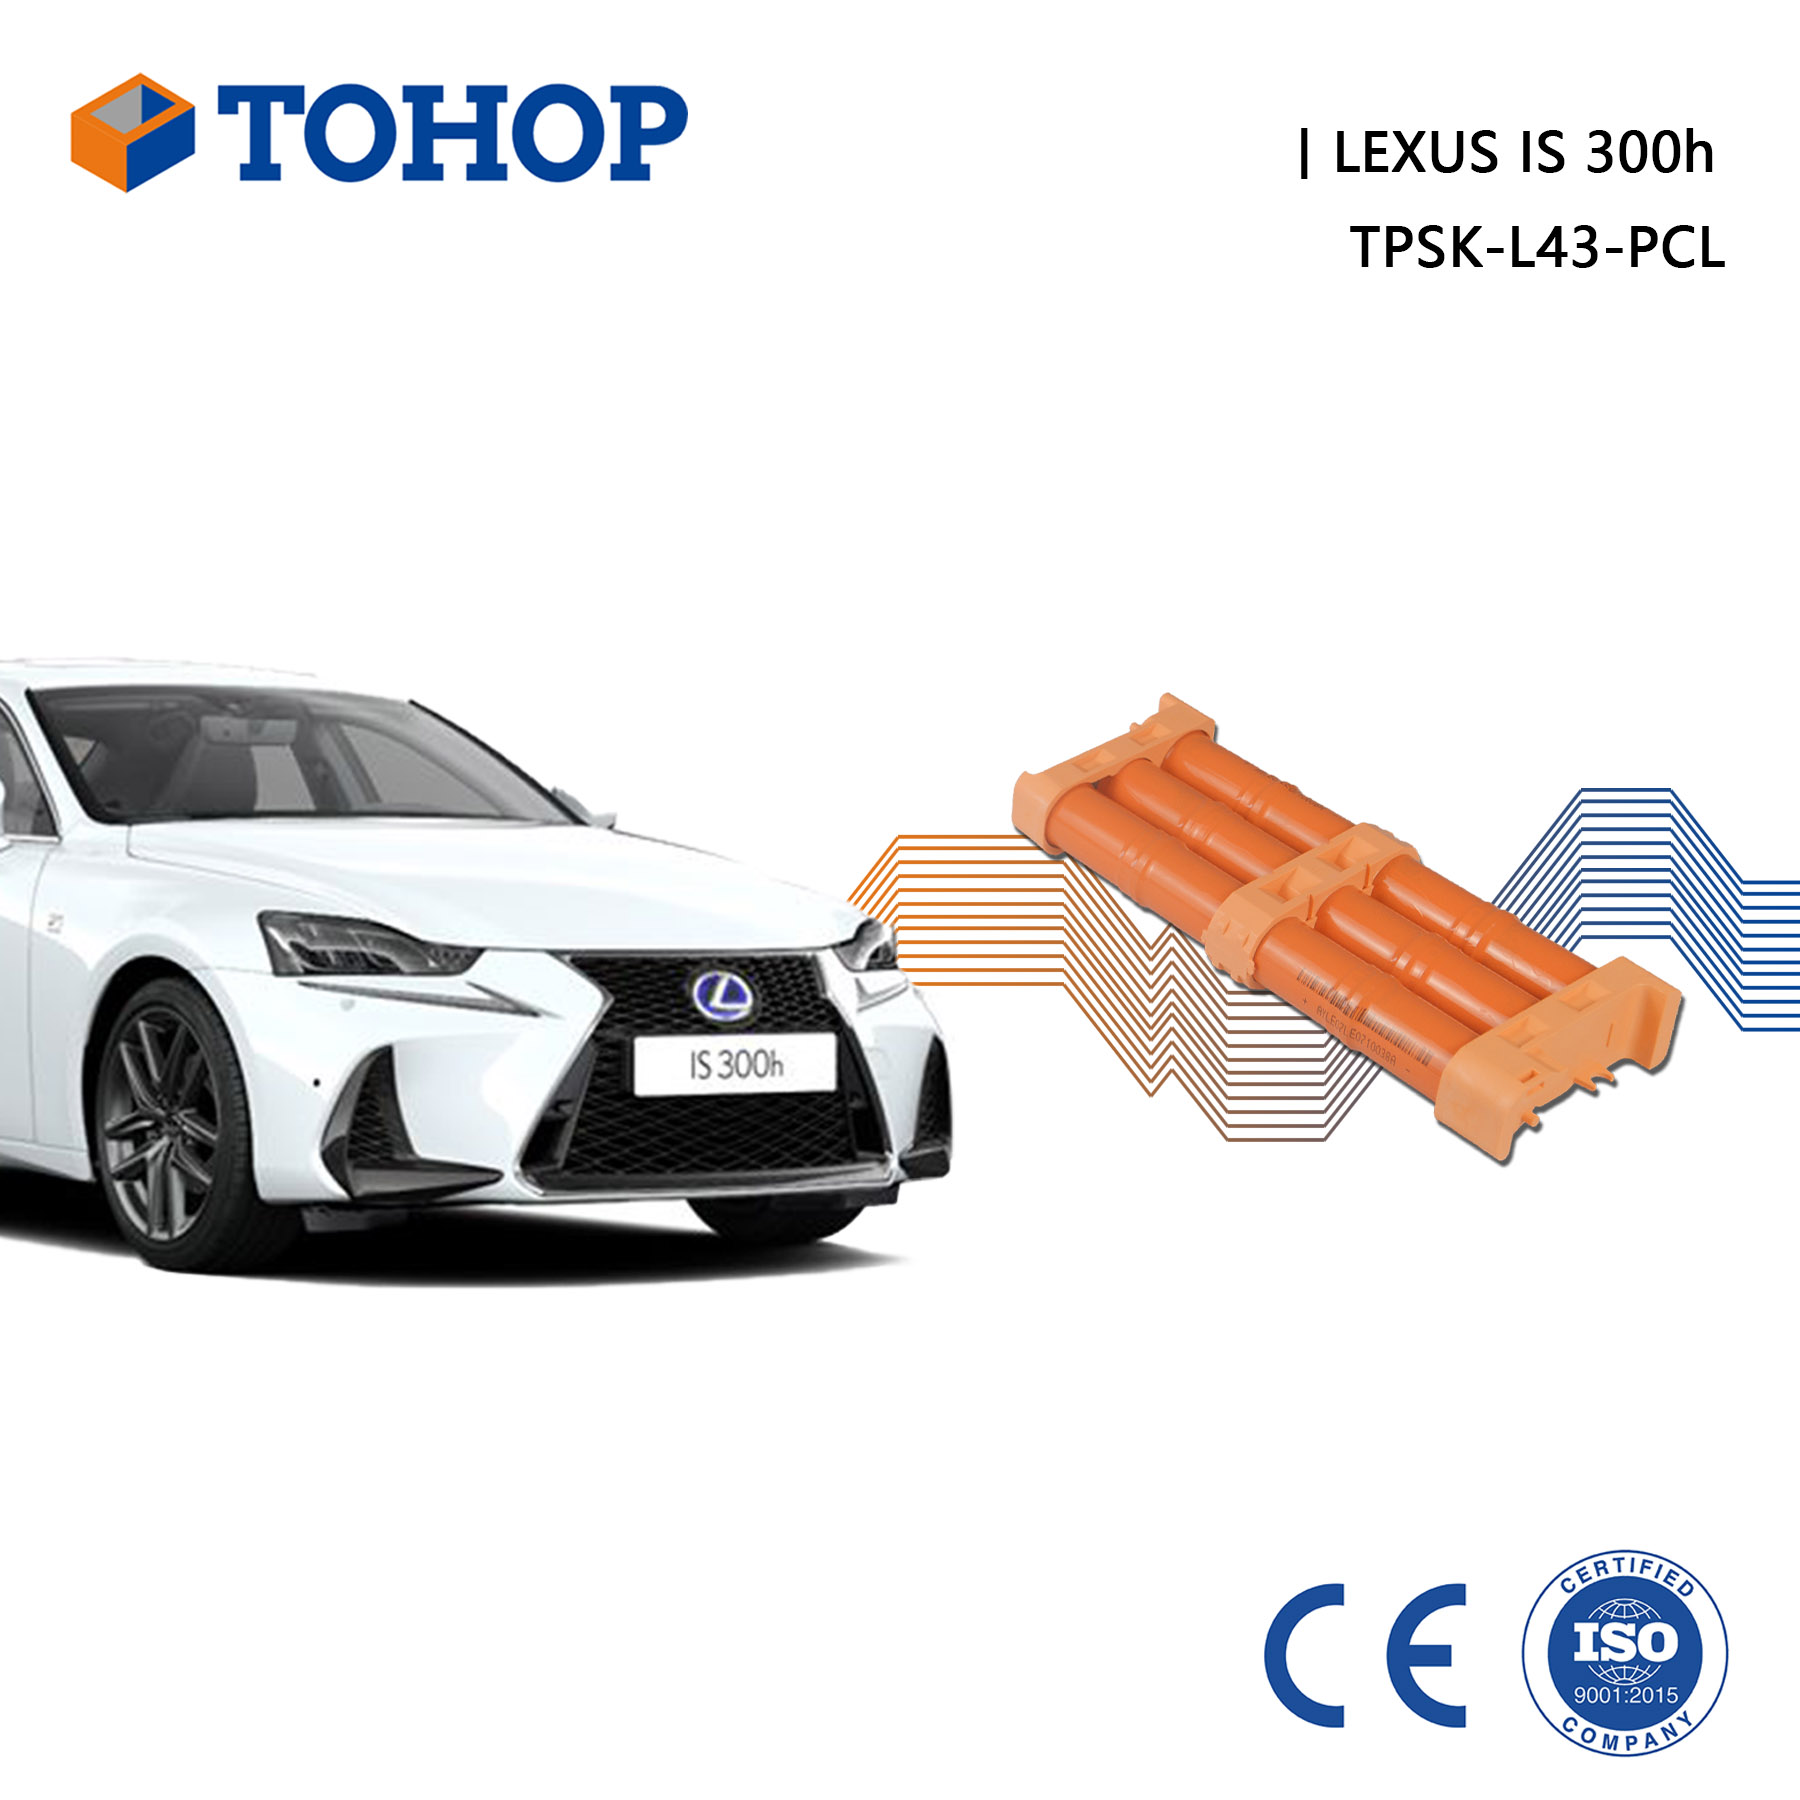 TOHOP Lexus IS 300h Remplacement de la batterie hybride 14.4V 6.5Ah Cellule NiMH neuve